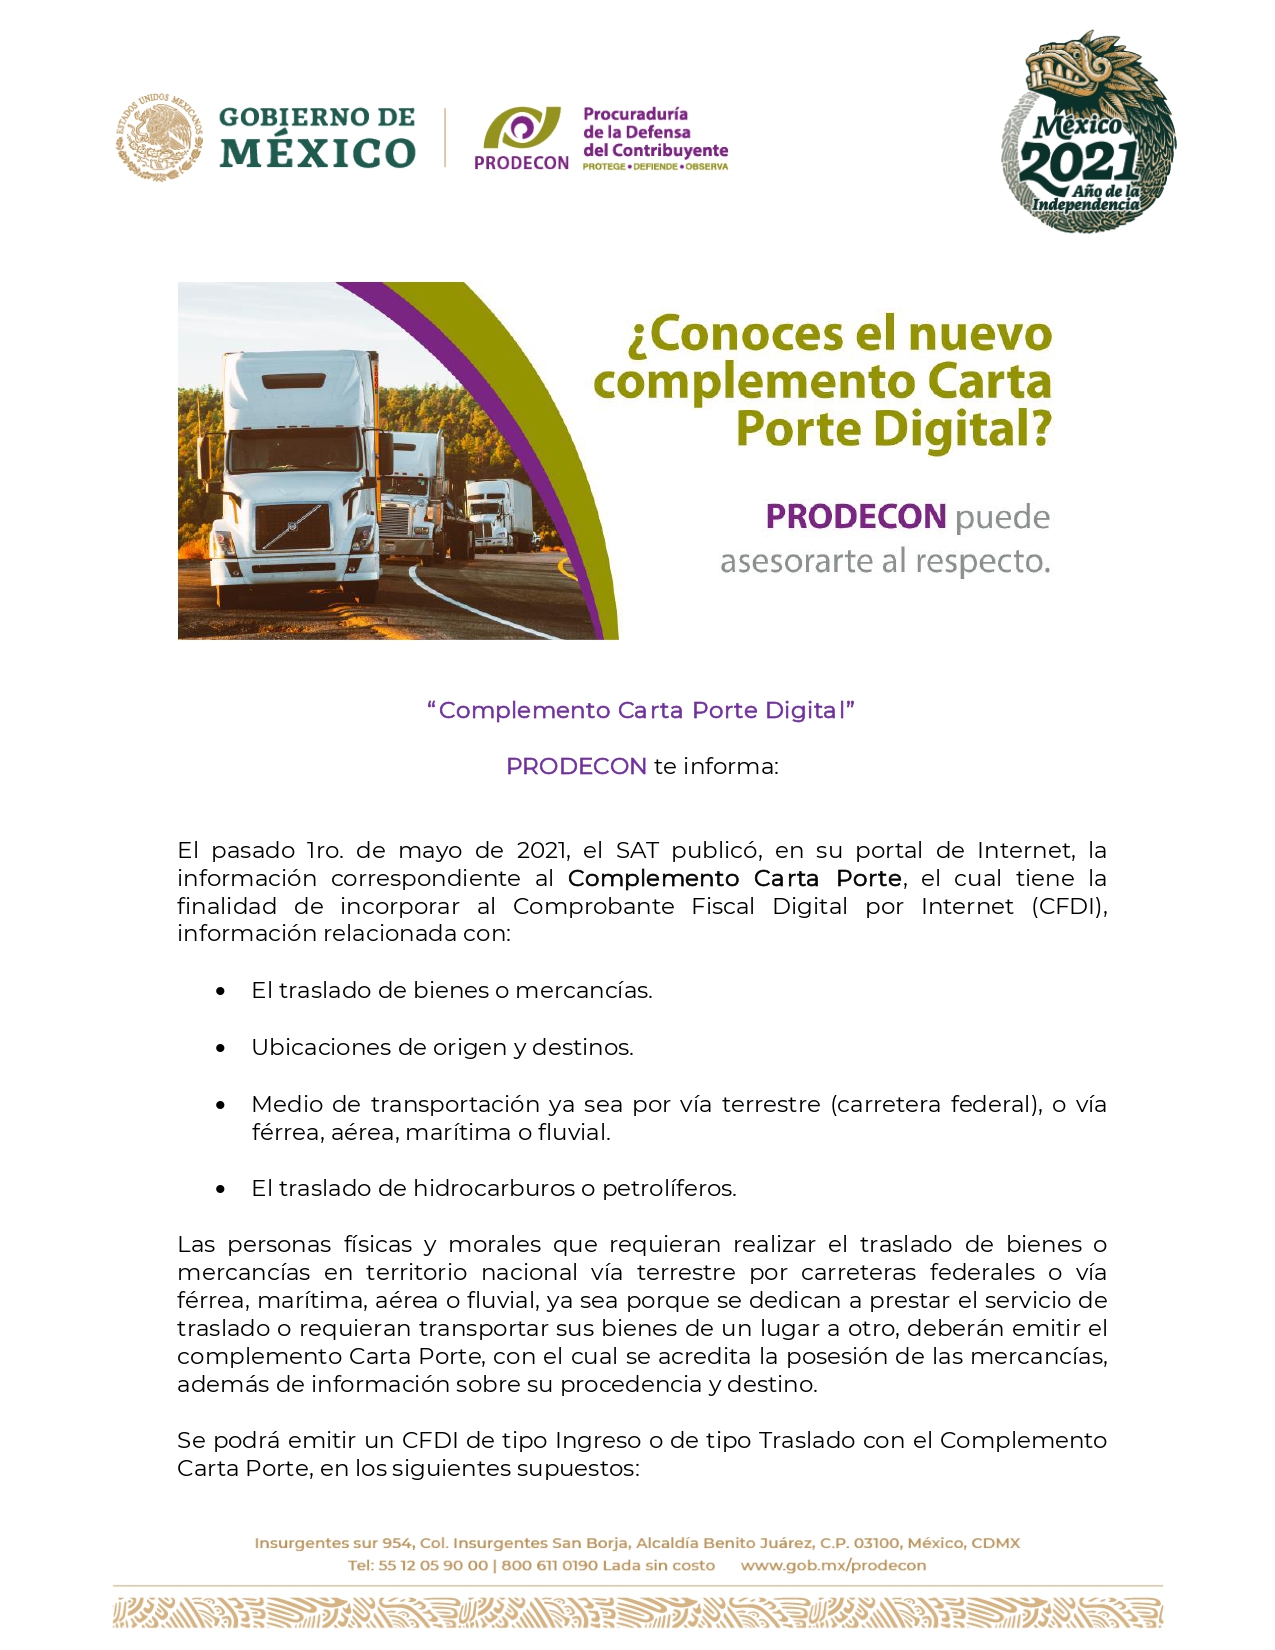 Cfdi Complemento Carta Porte 2021 Inició Vigencia Elcontamx